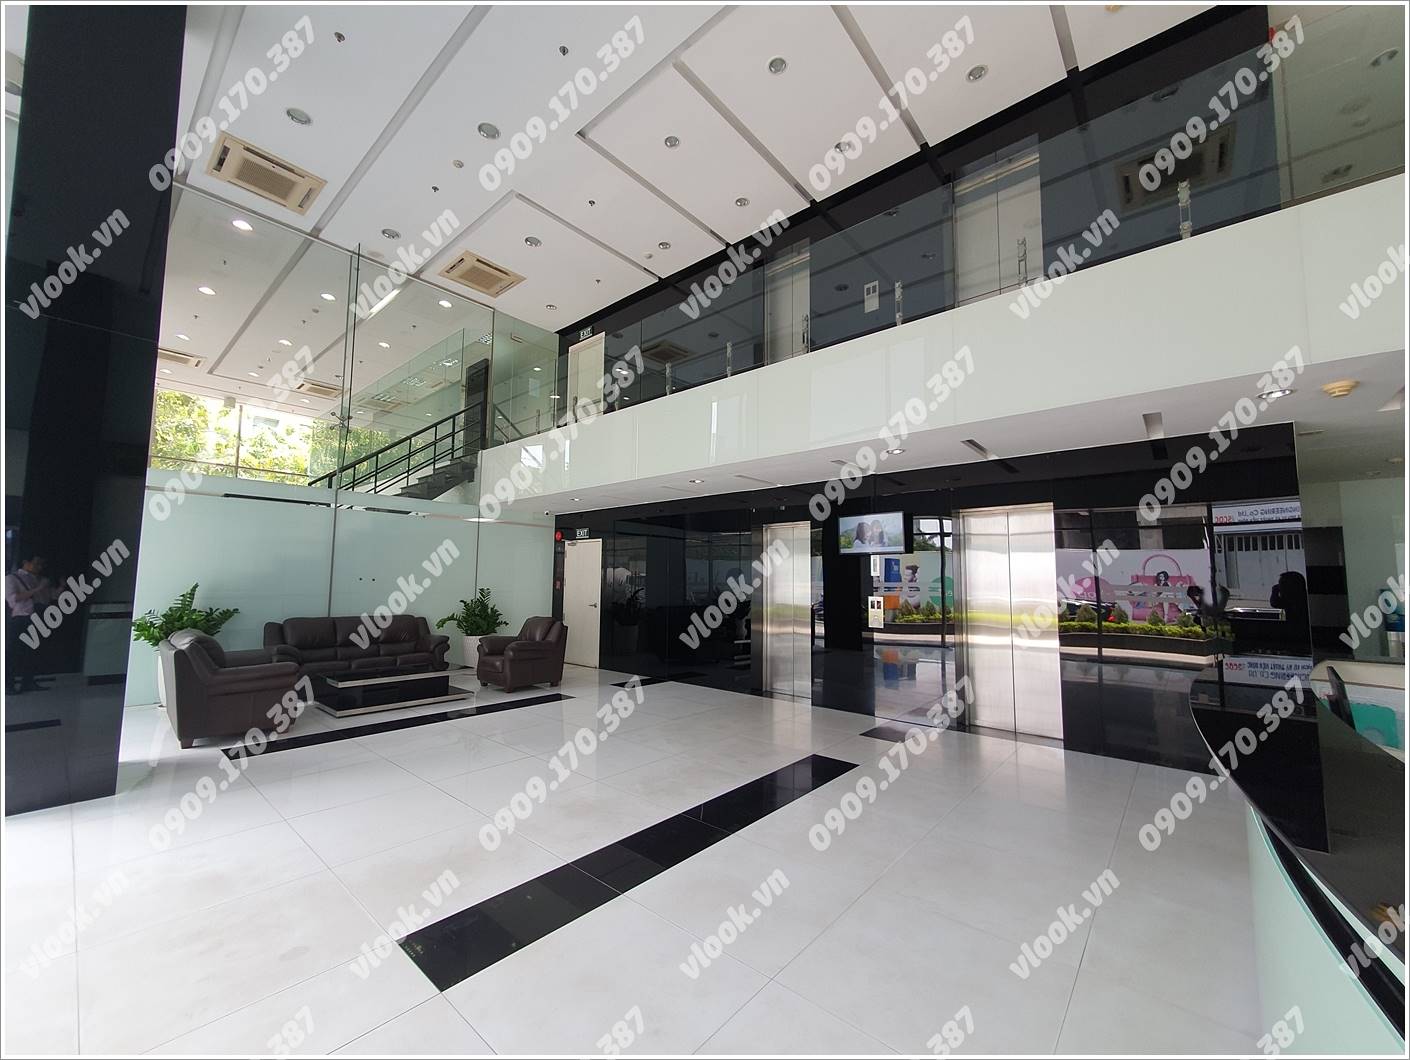 Bên trong cao ốc cho thuê văn phòng IMV Building, Hoàng Văn Thái, Quận 7, TPHCM - vlook.vn